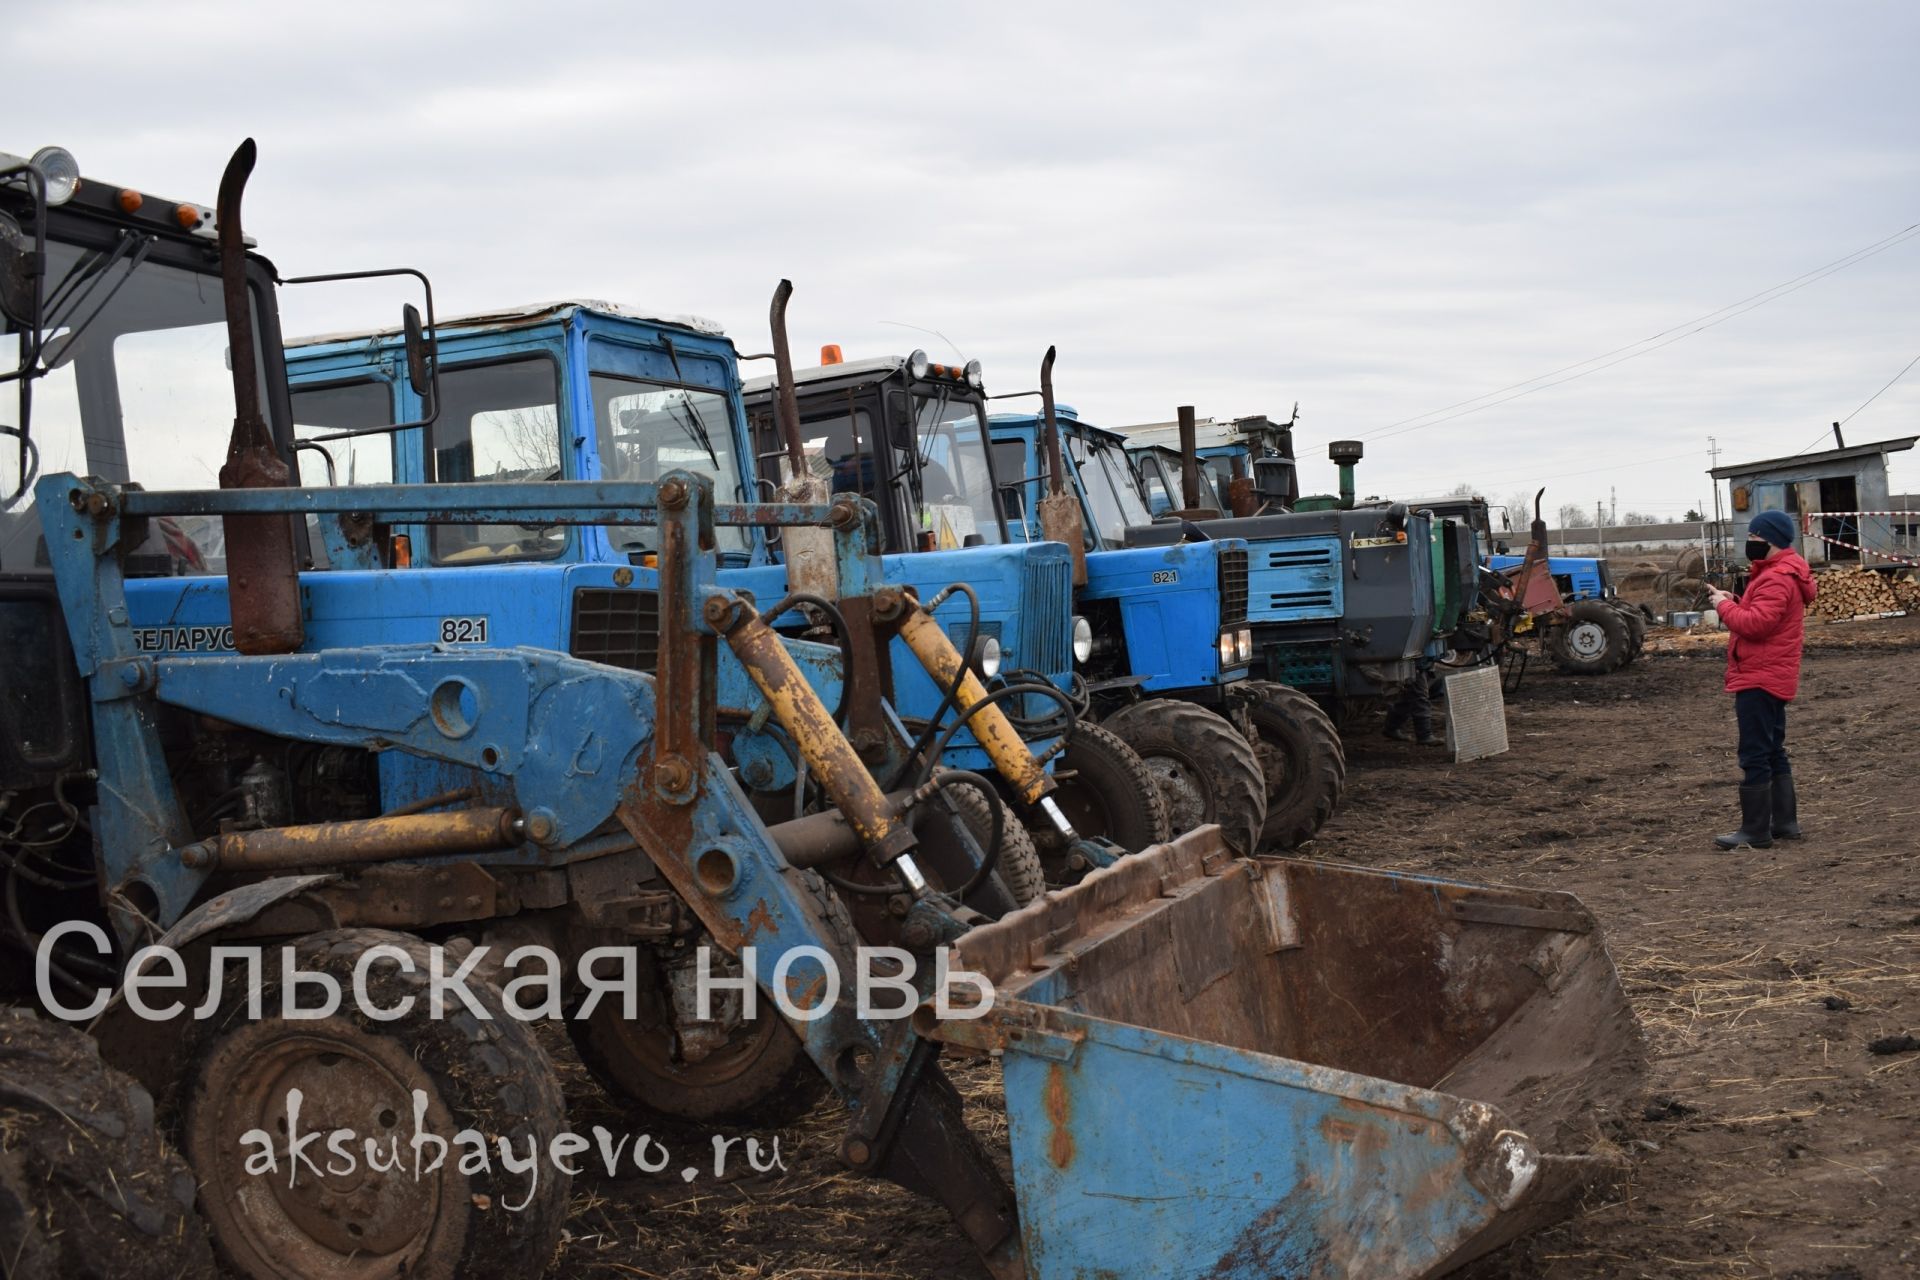 Аксубаевские земледельцы готовы к посевной